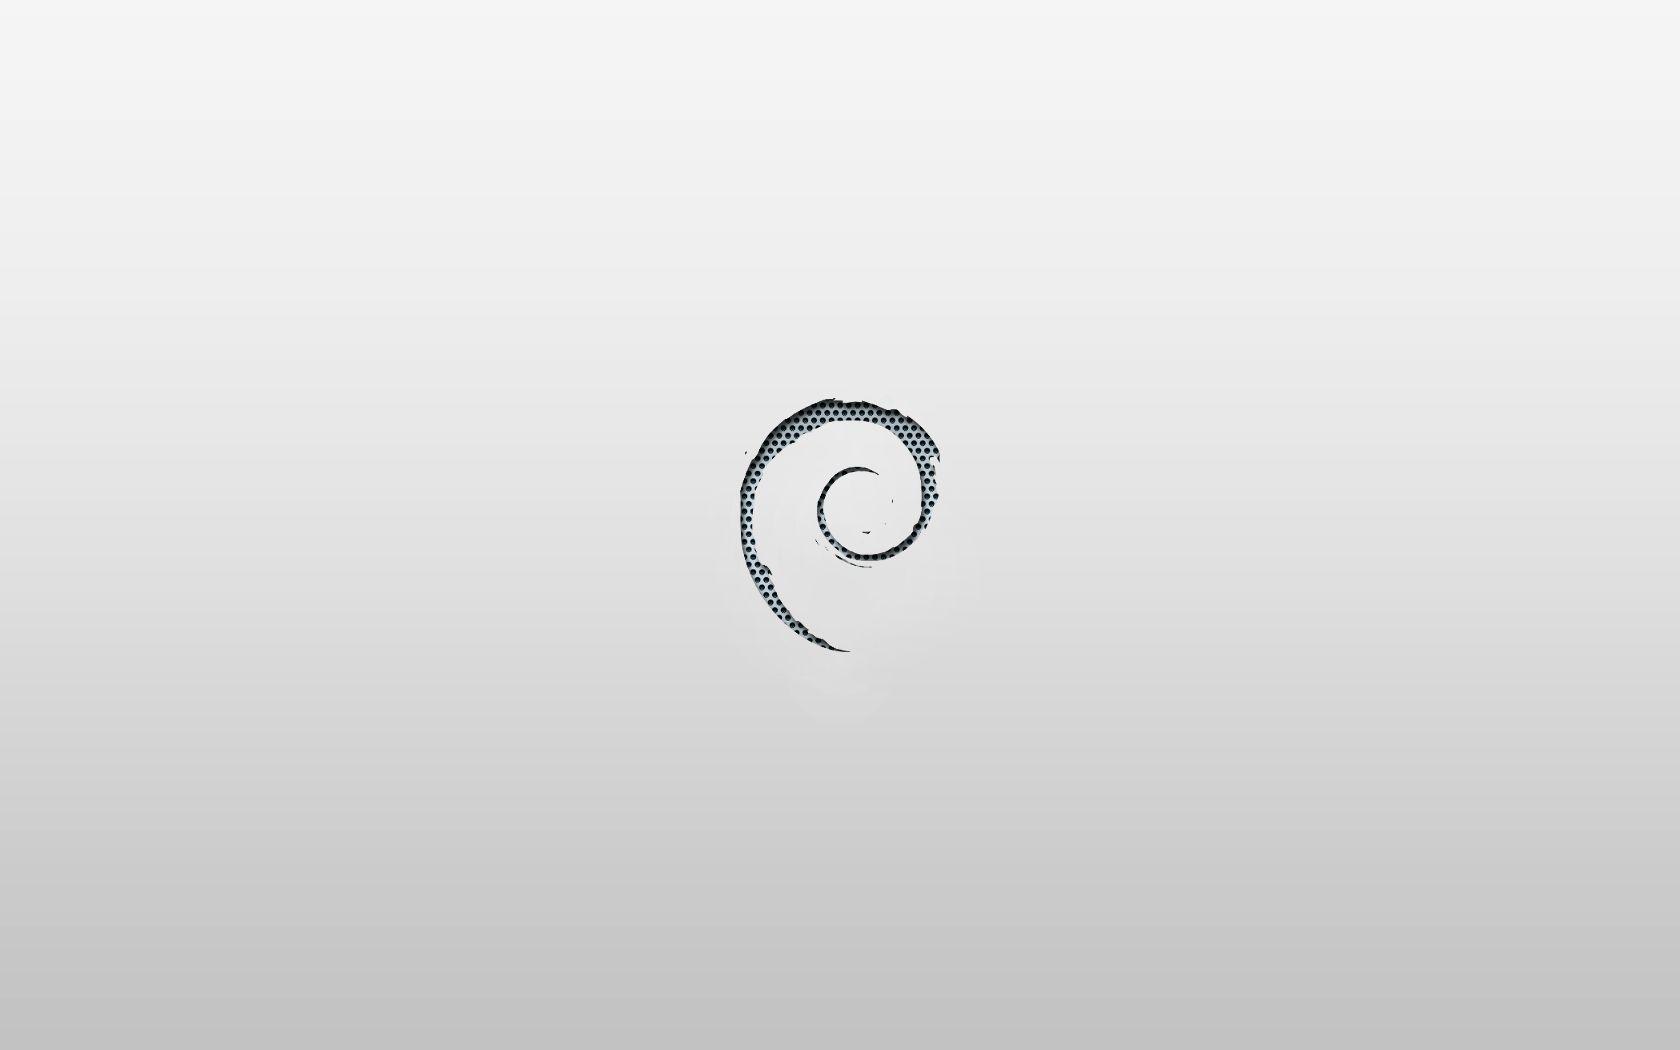 Una de wallpaper para Debian [Actualizada] MuyLinux